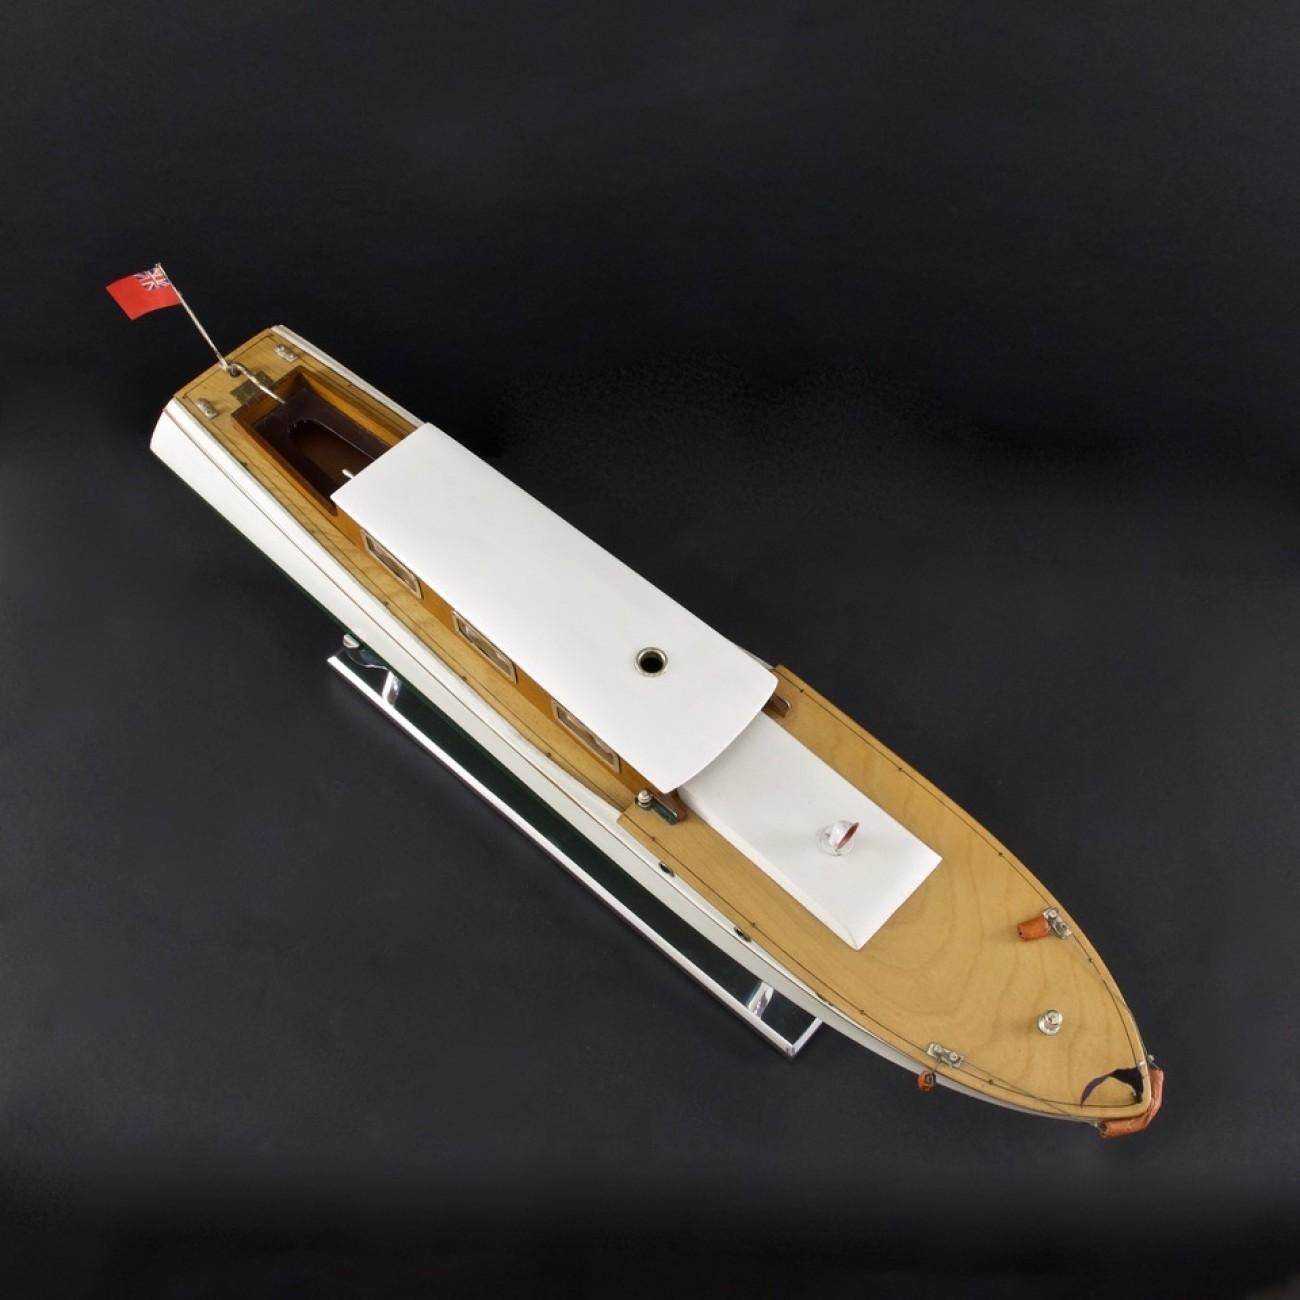 bassett lowke model boats